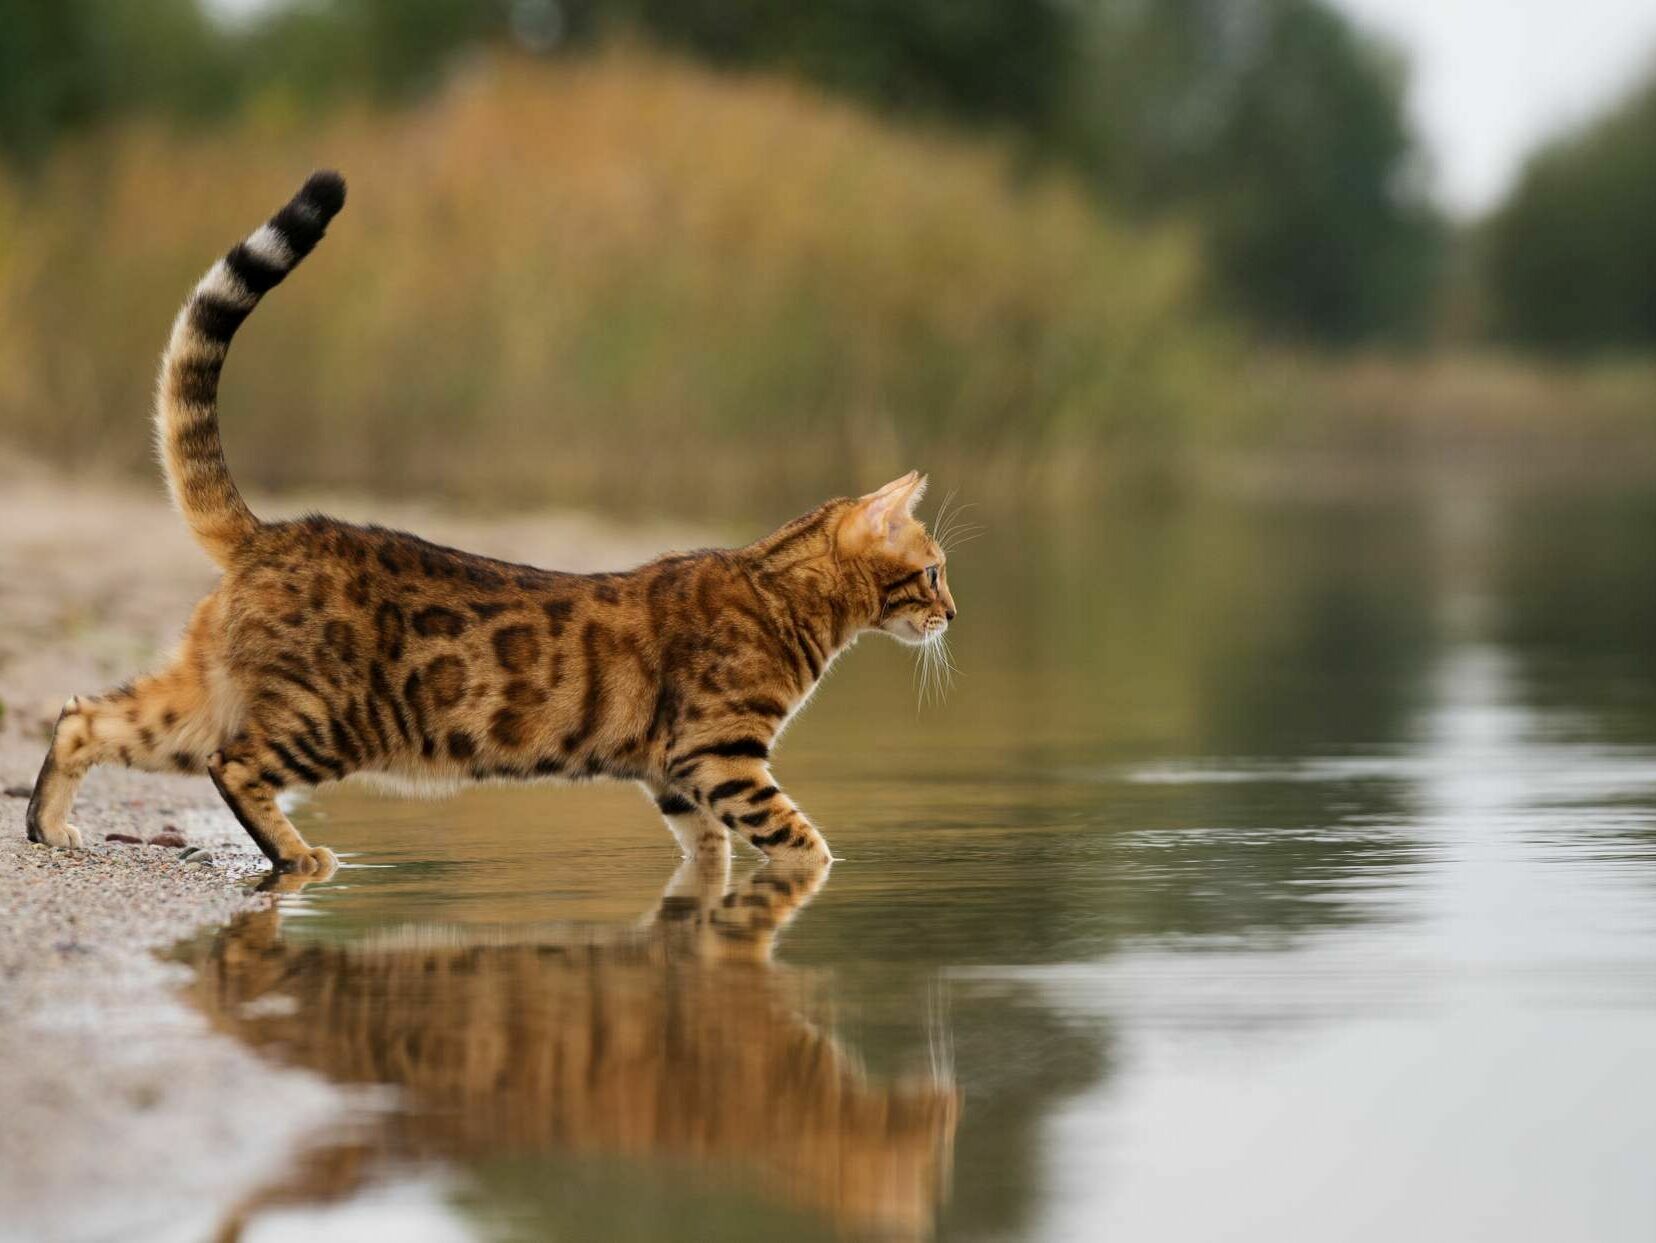 Bengalkatze – Wildkatze oder Haustiger?